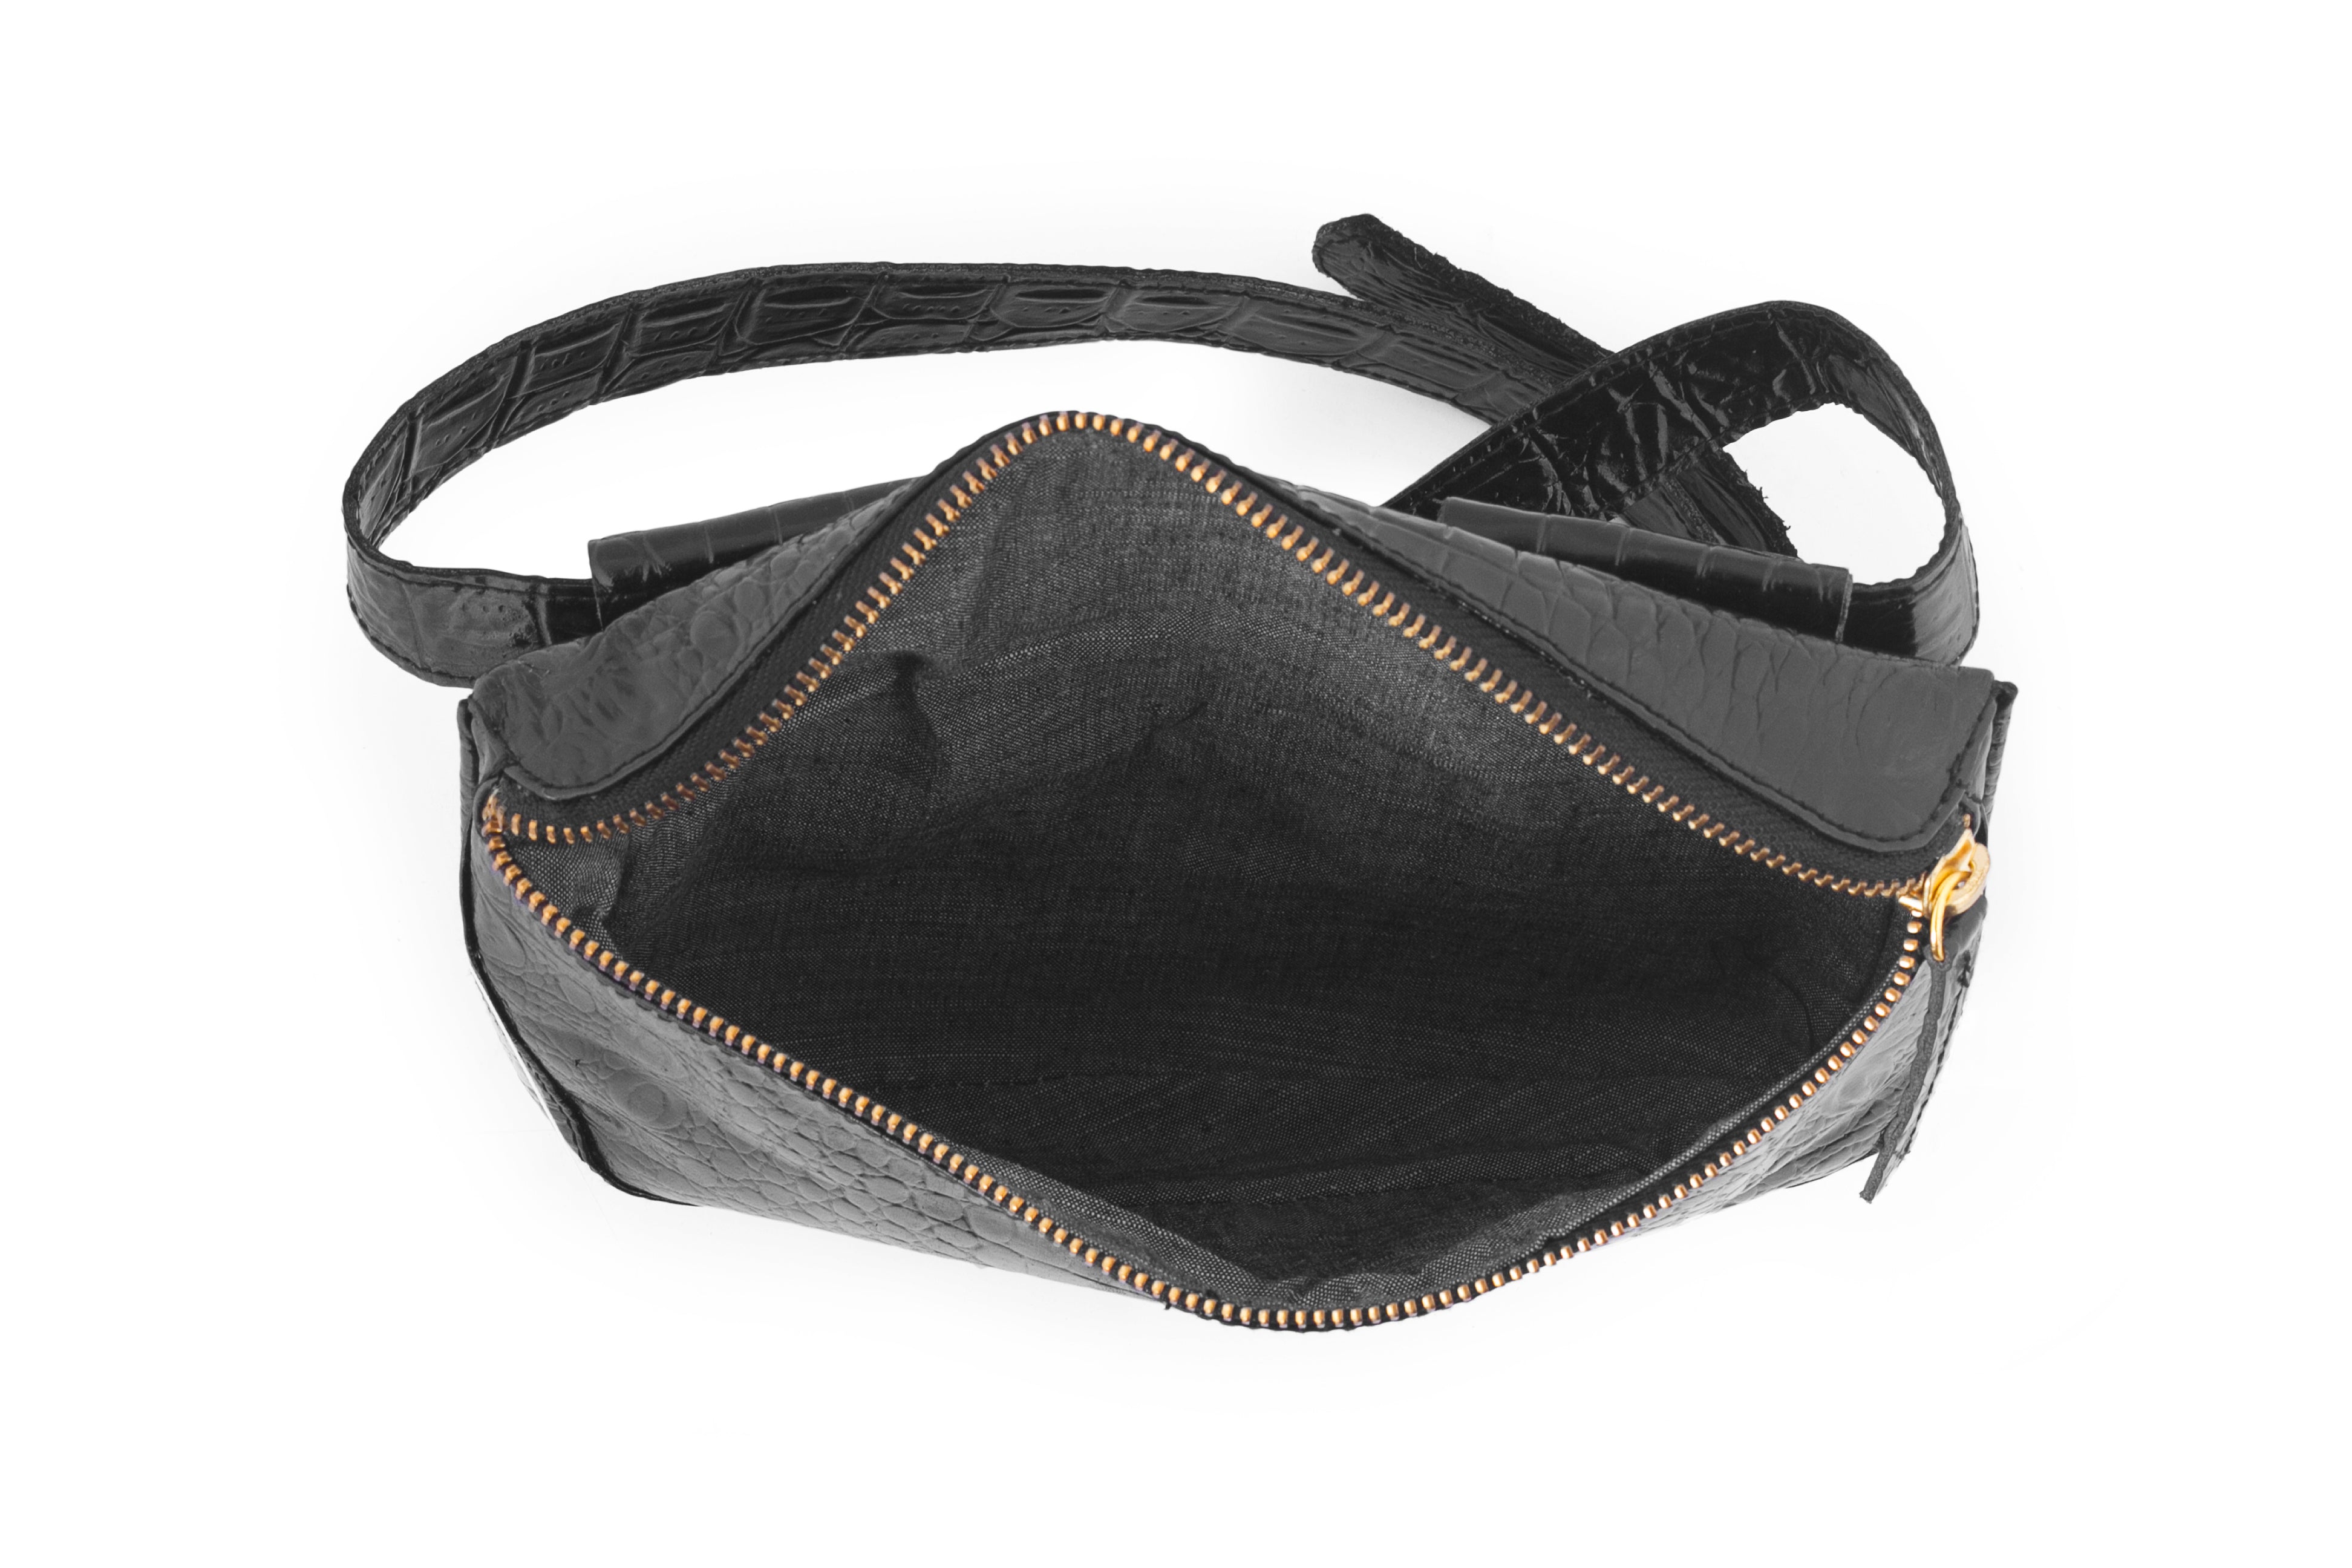 Inside view black leather fanny pack belt bag